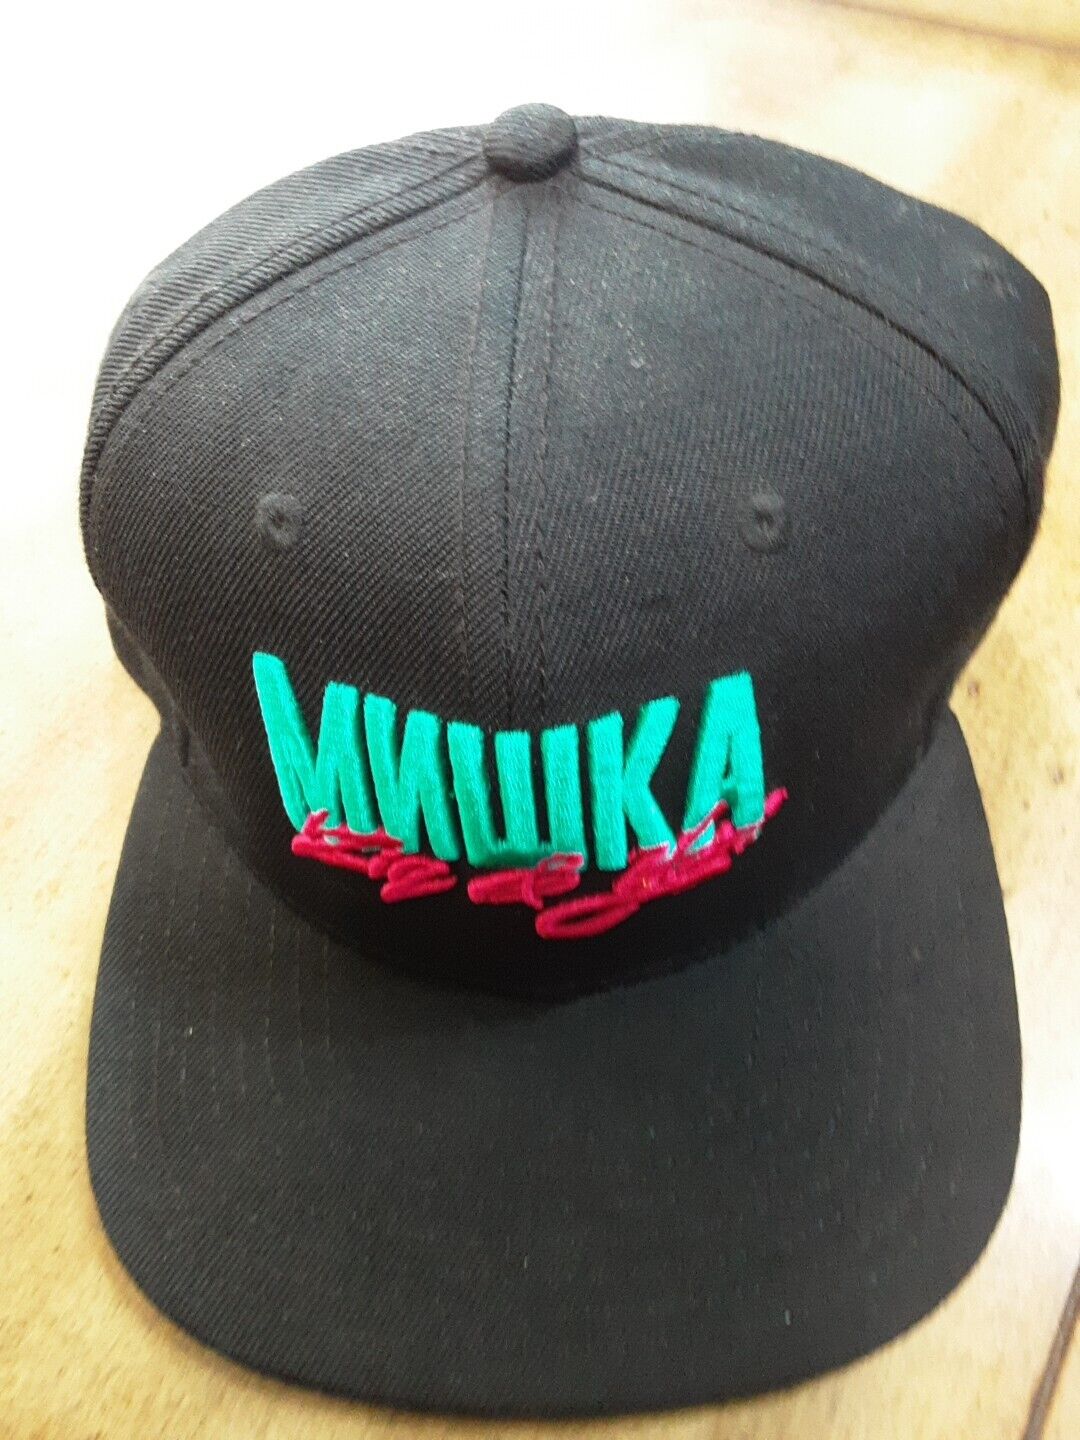 Mishka MNWKA X Ziq & Yoni Baseball Streetwear Cap Adjustable Snapback OSFM 